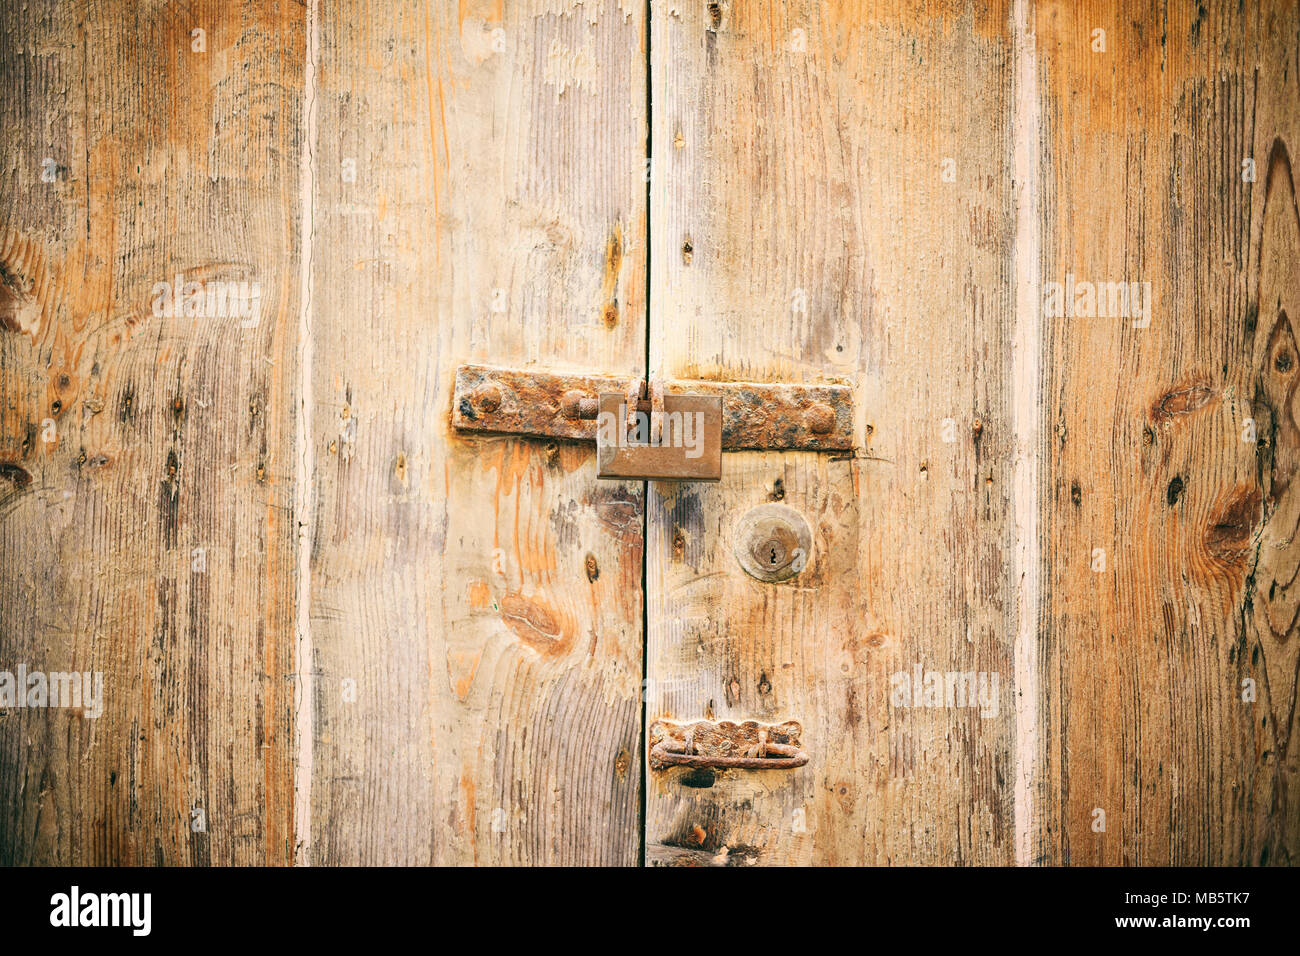 Porte verrouillée. Le cadenas fermé old rusty une porte en bois, vue rapprochée Banque D'Images